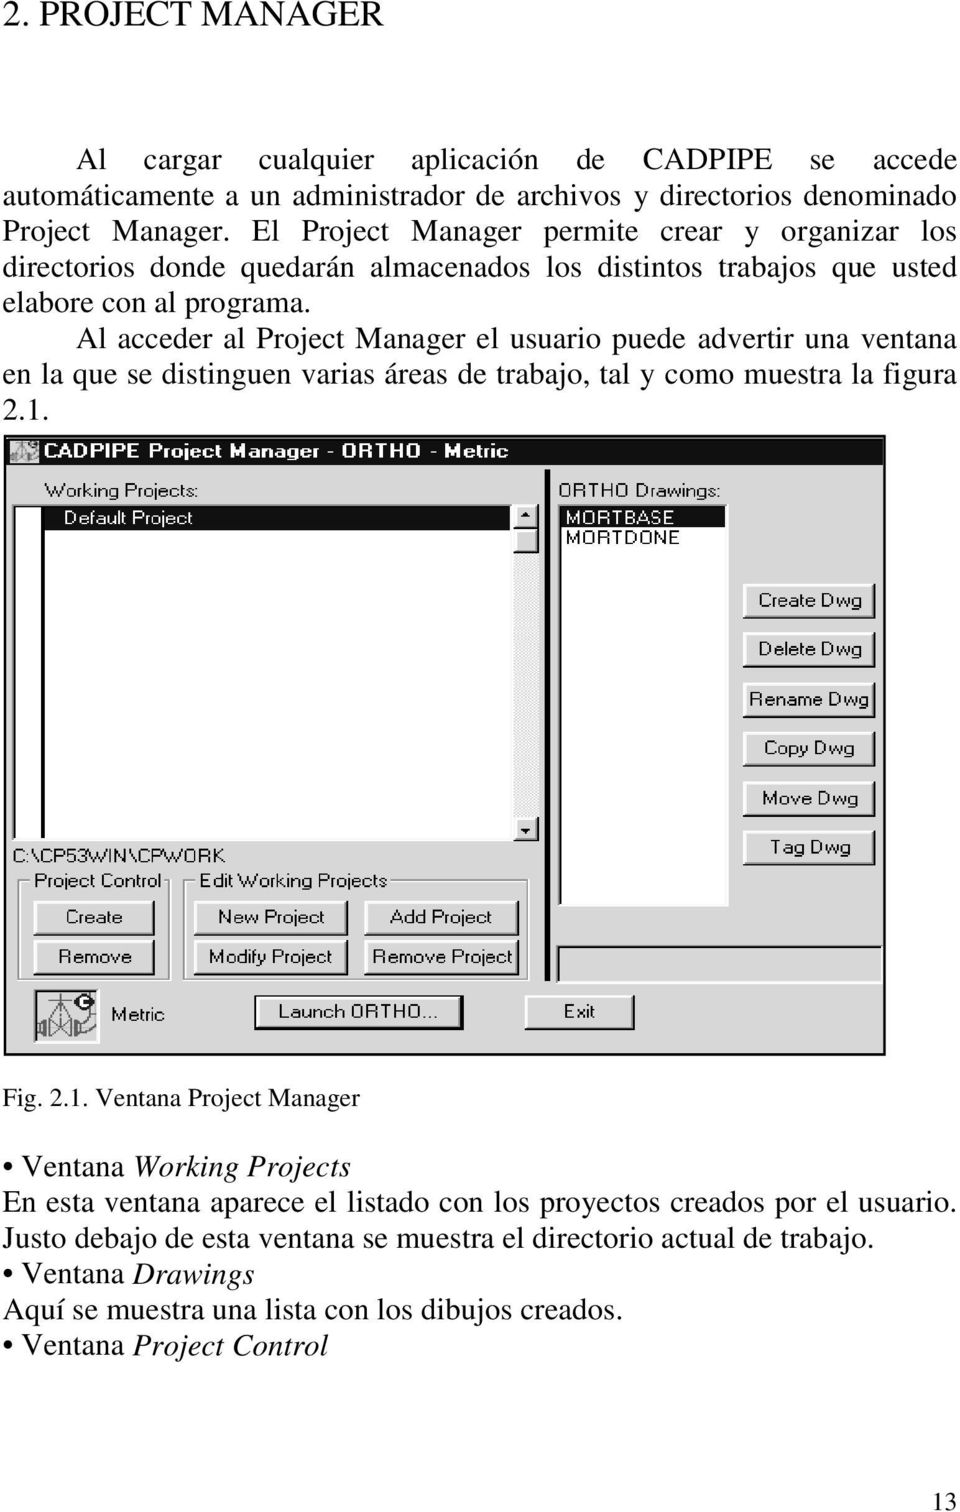 Al acceder al Project Manager el usuario puede advertir una ventana en la que se distinguen varias áreas de trabajo, tal y como muestra la figura 2.1.